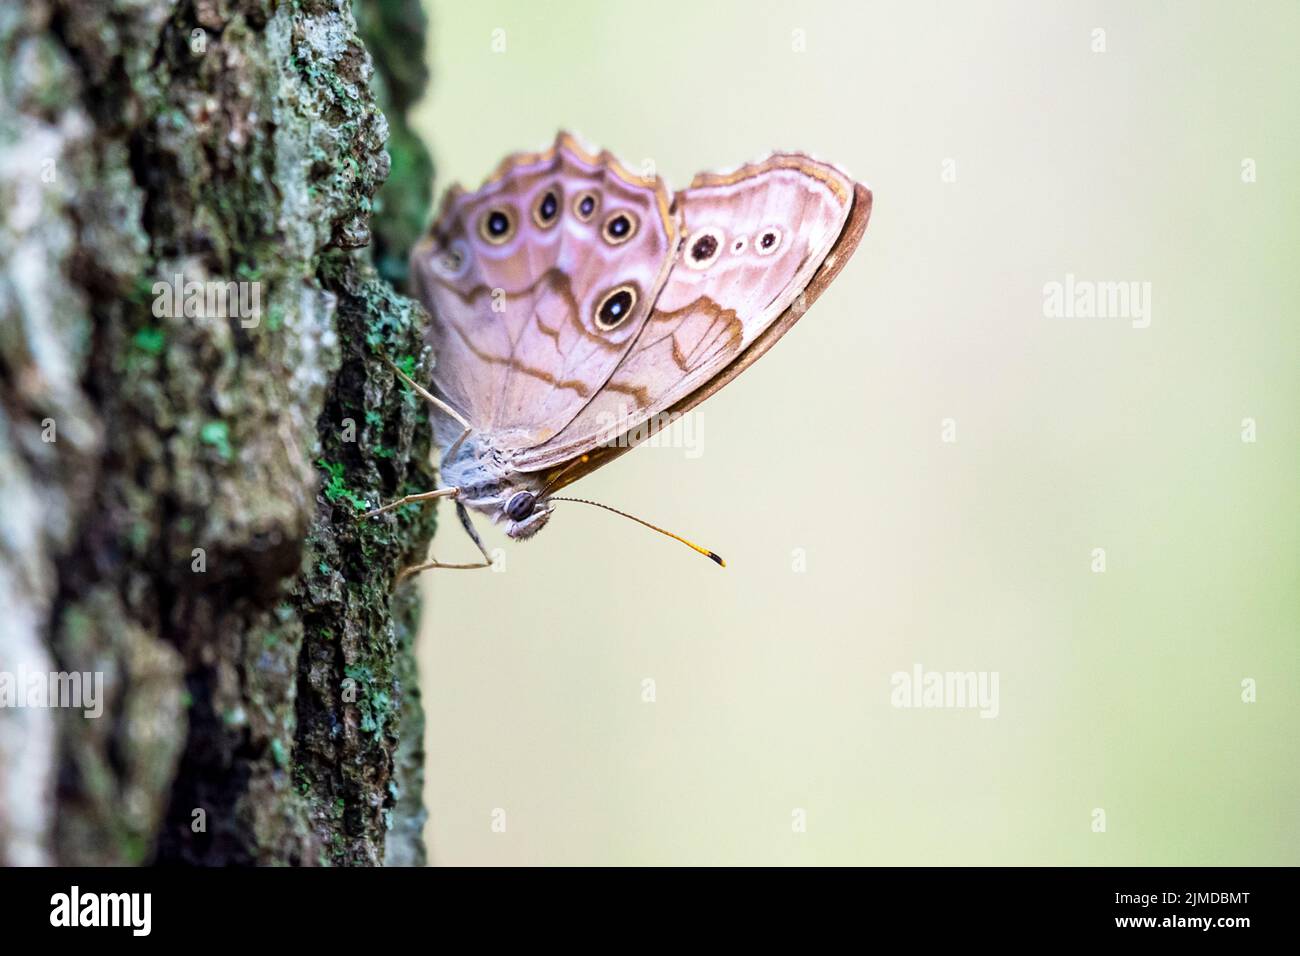 Ein Schmetterling aus dem Norden landet auf dem Stamm eines Baumes. Stockfoto